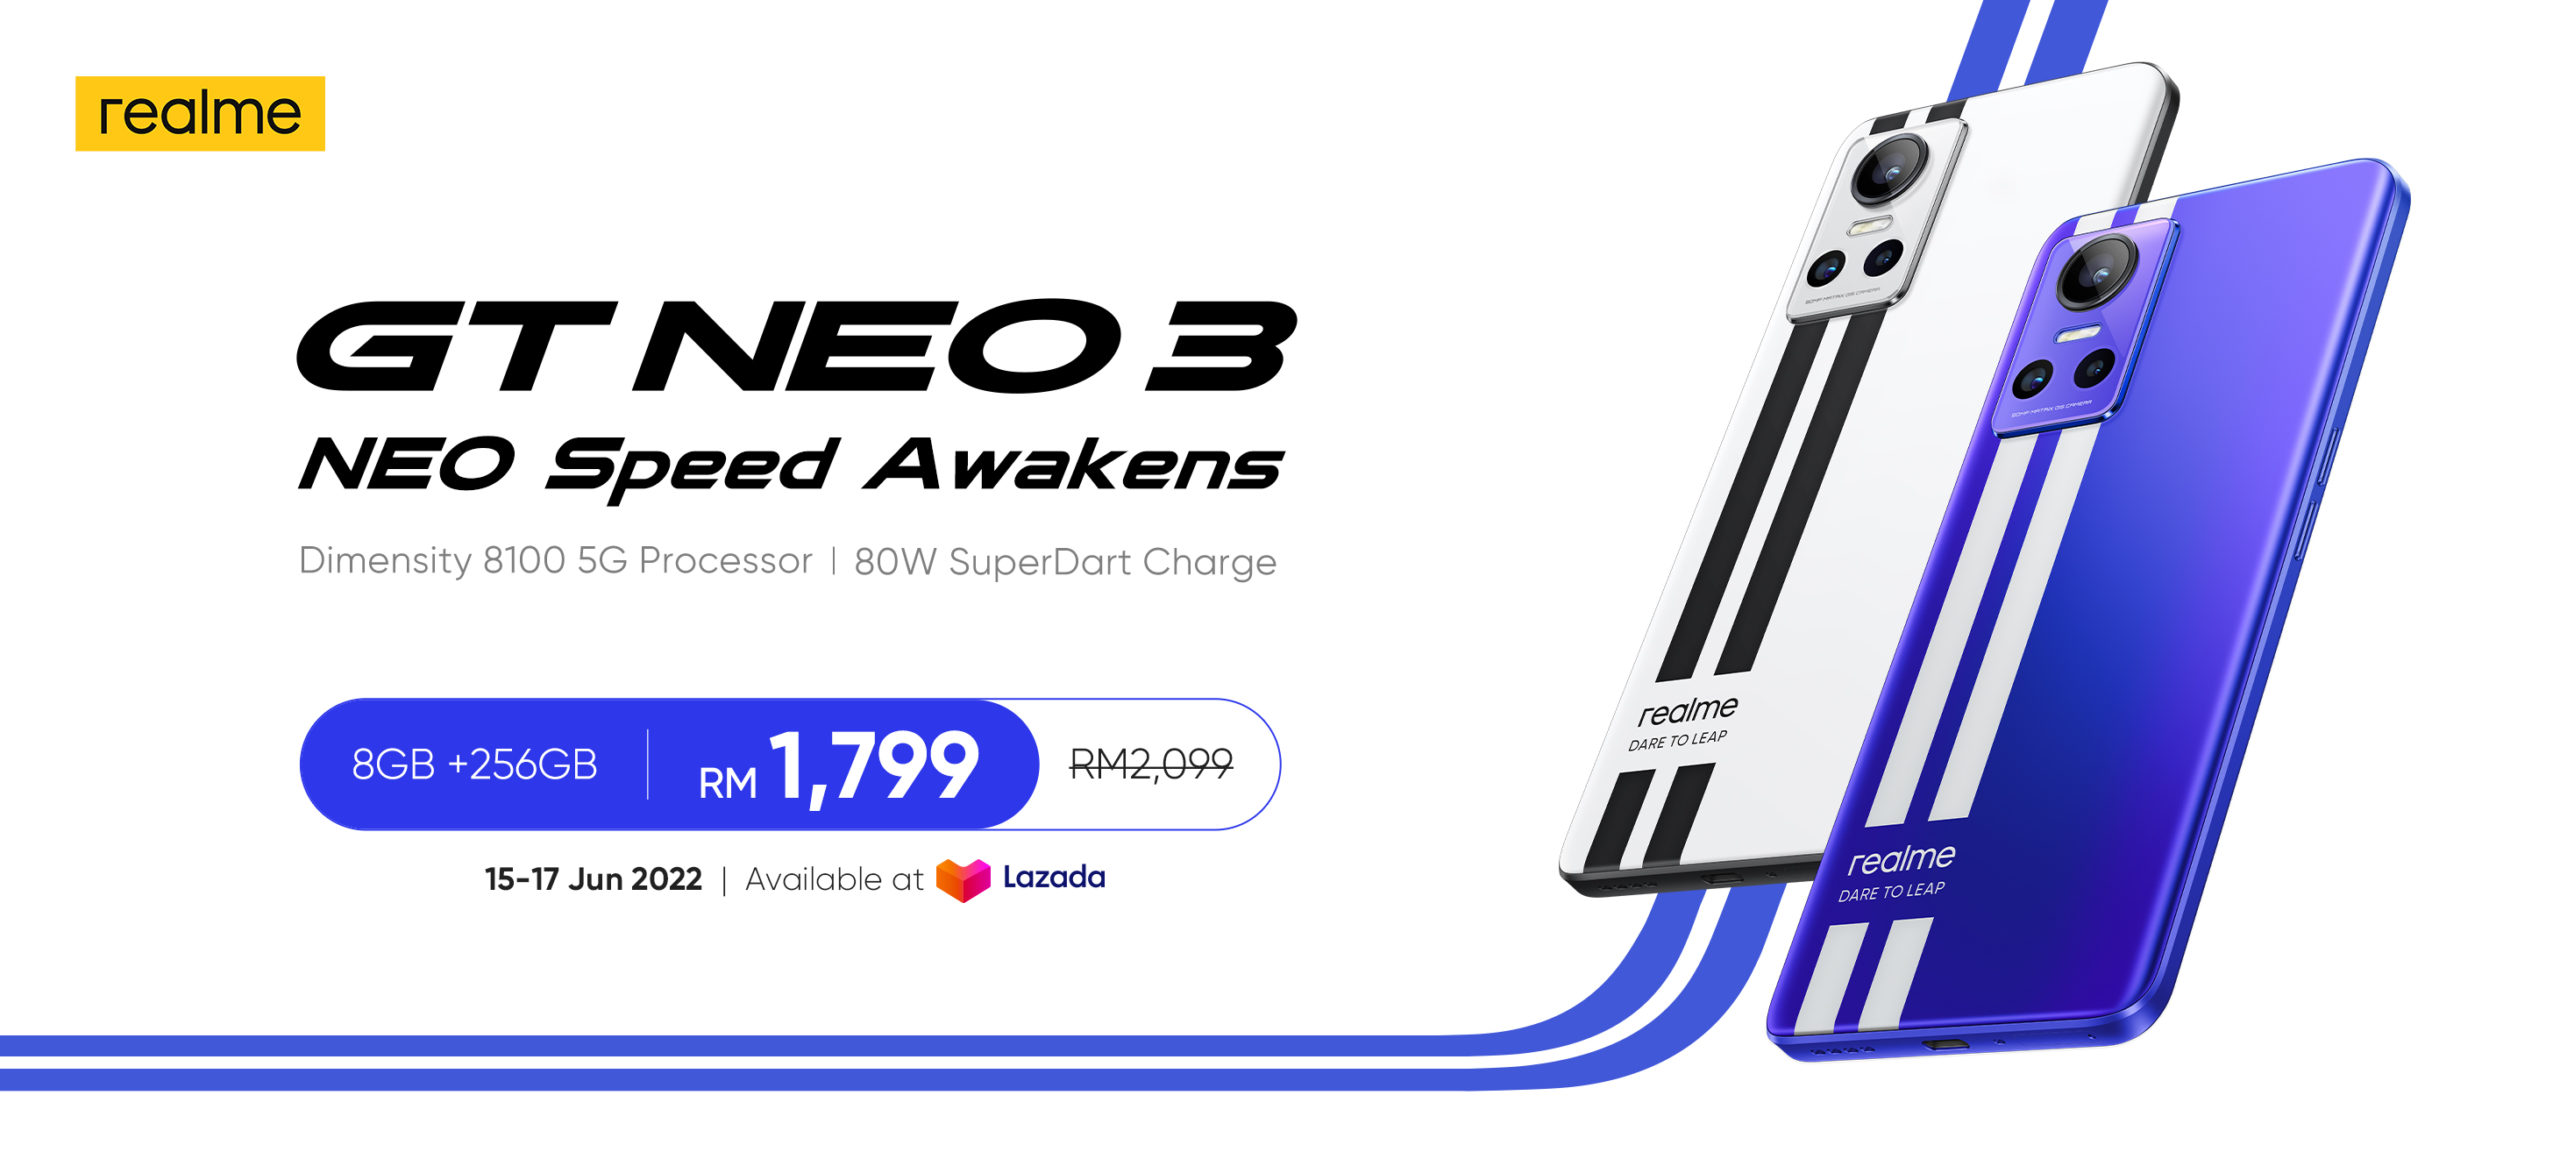 realme GT Neo 3 kini rasmi di Malaysia - harga promosi RM 1,799 sahaja 3